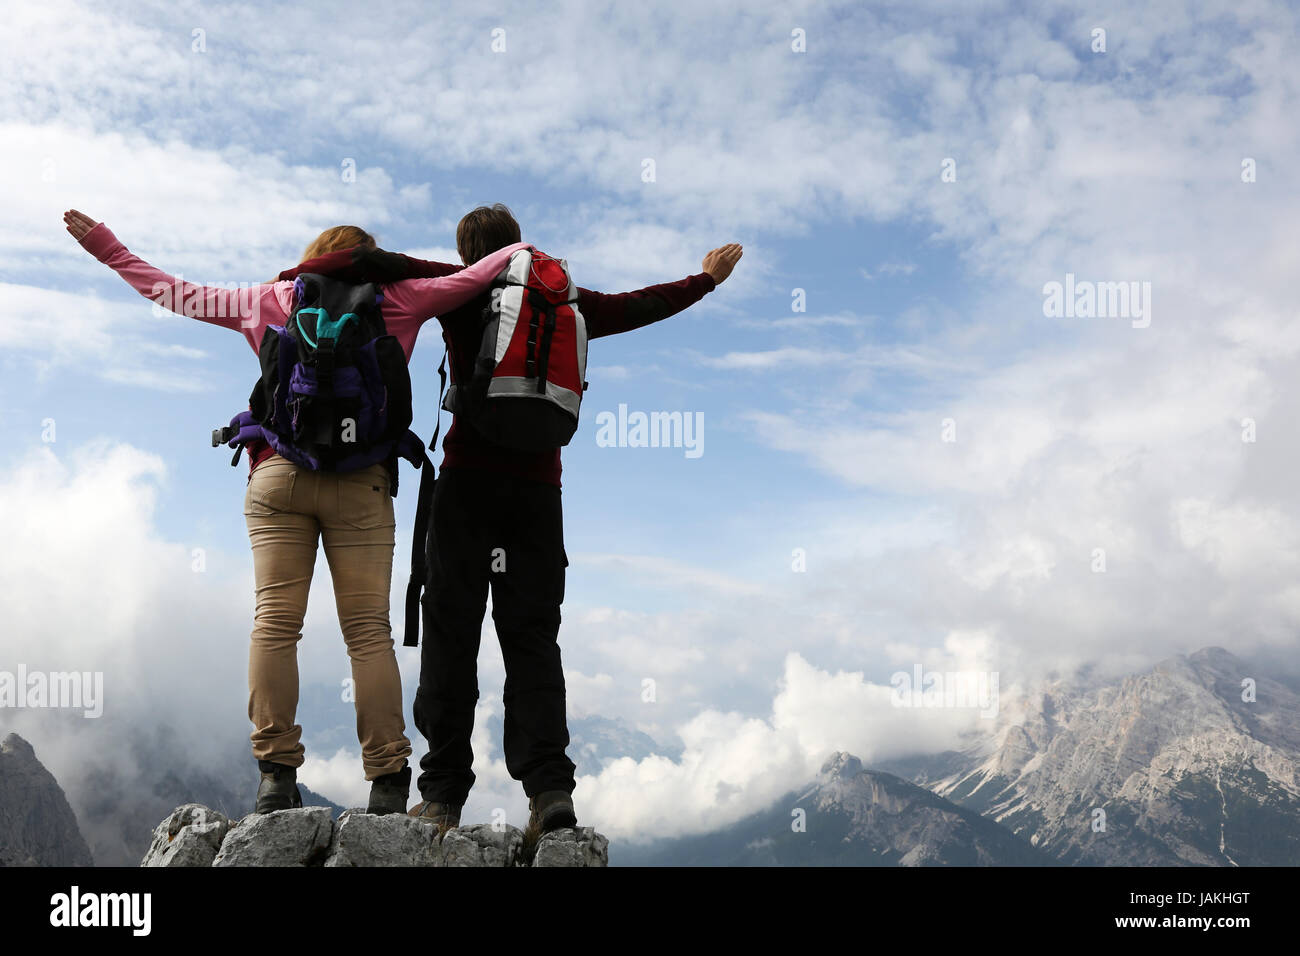 Zwei junge Bergsteiger auf einem Berggipfel genießen ihren Erfolg Stock Photo